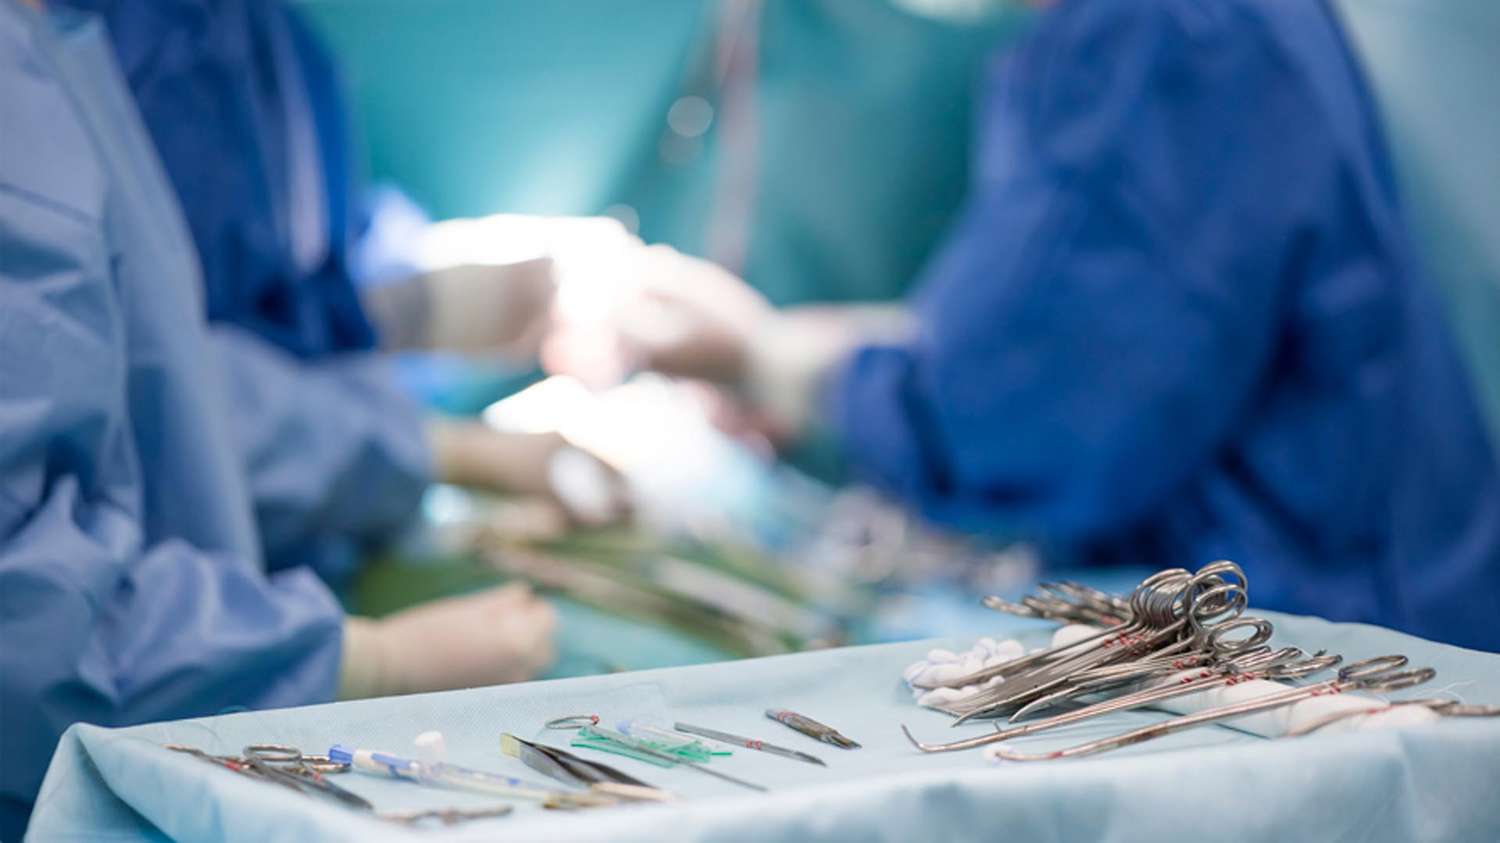 Cuatro pacientes accederán a trasplantes tras donación de órganos 